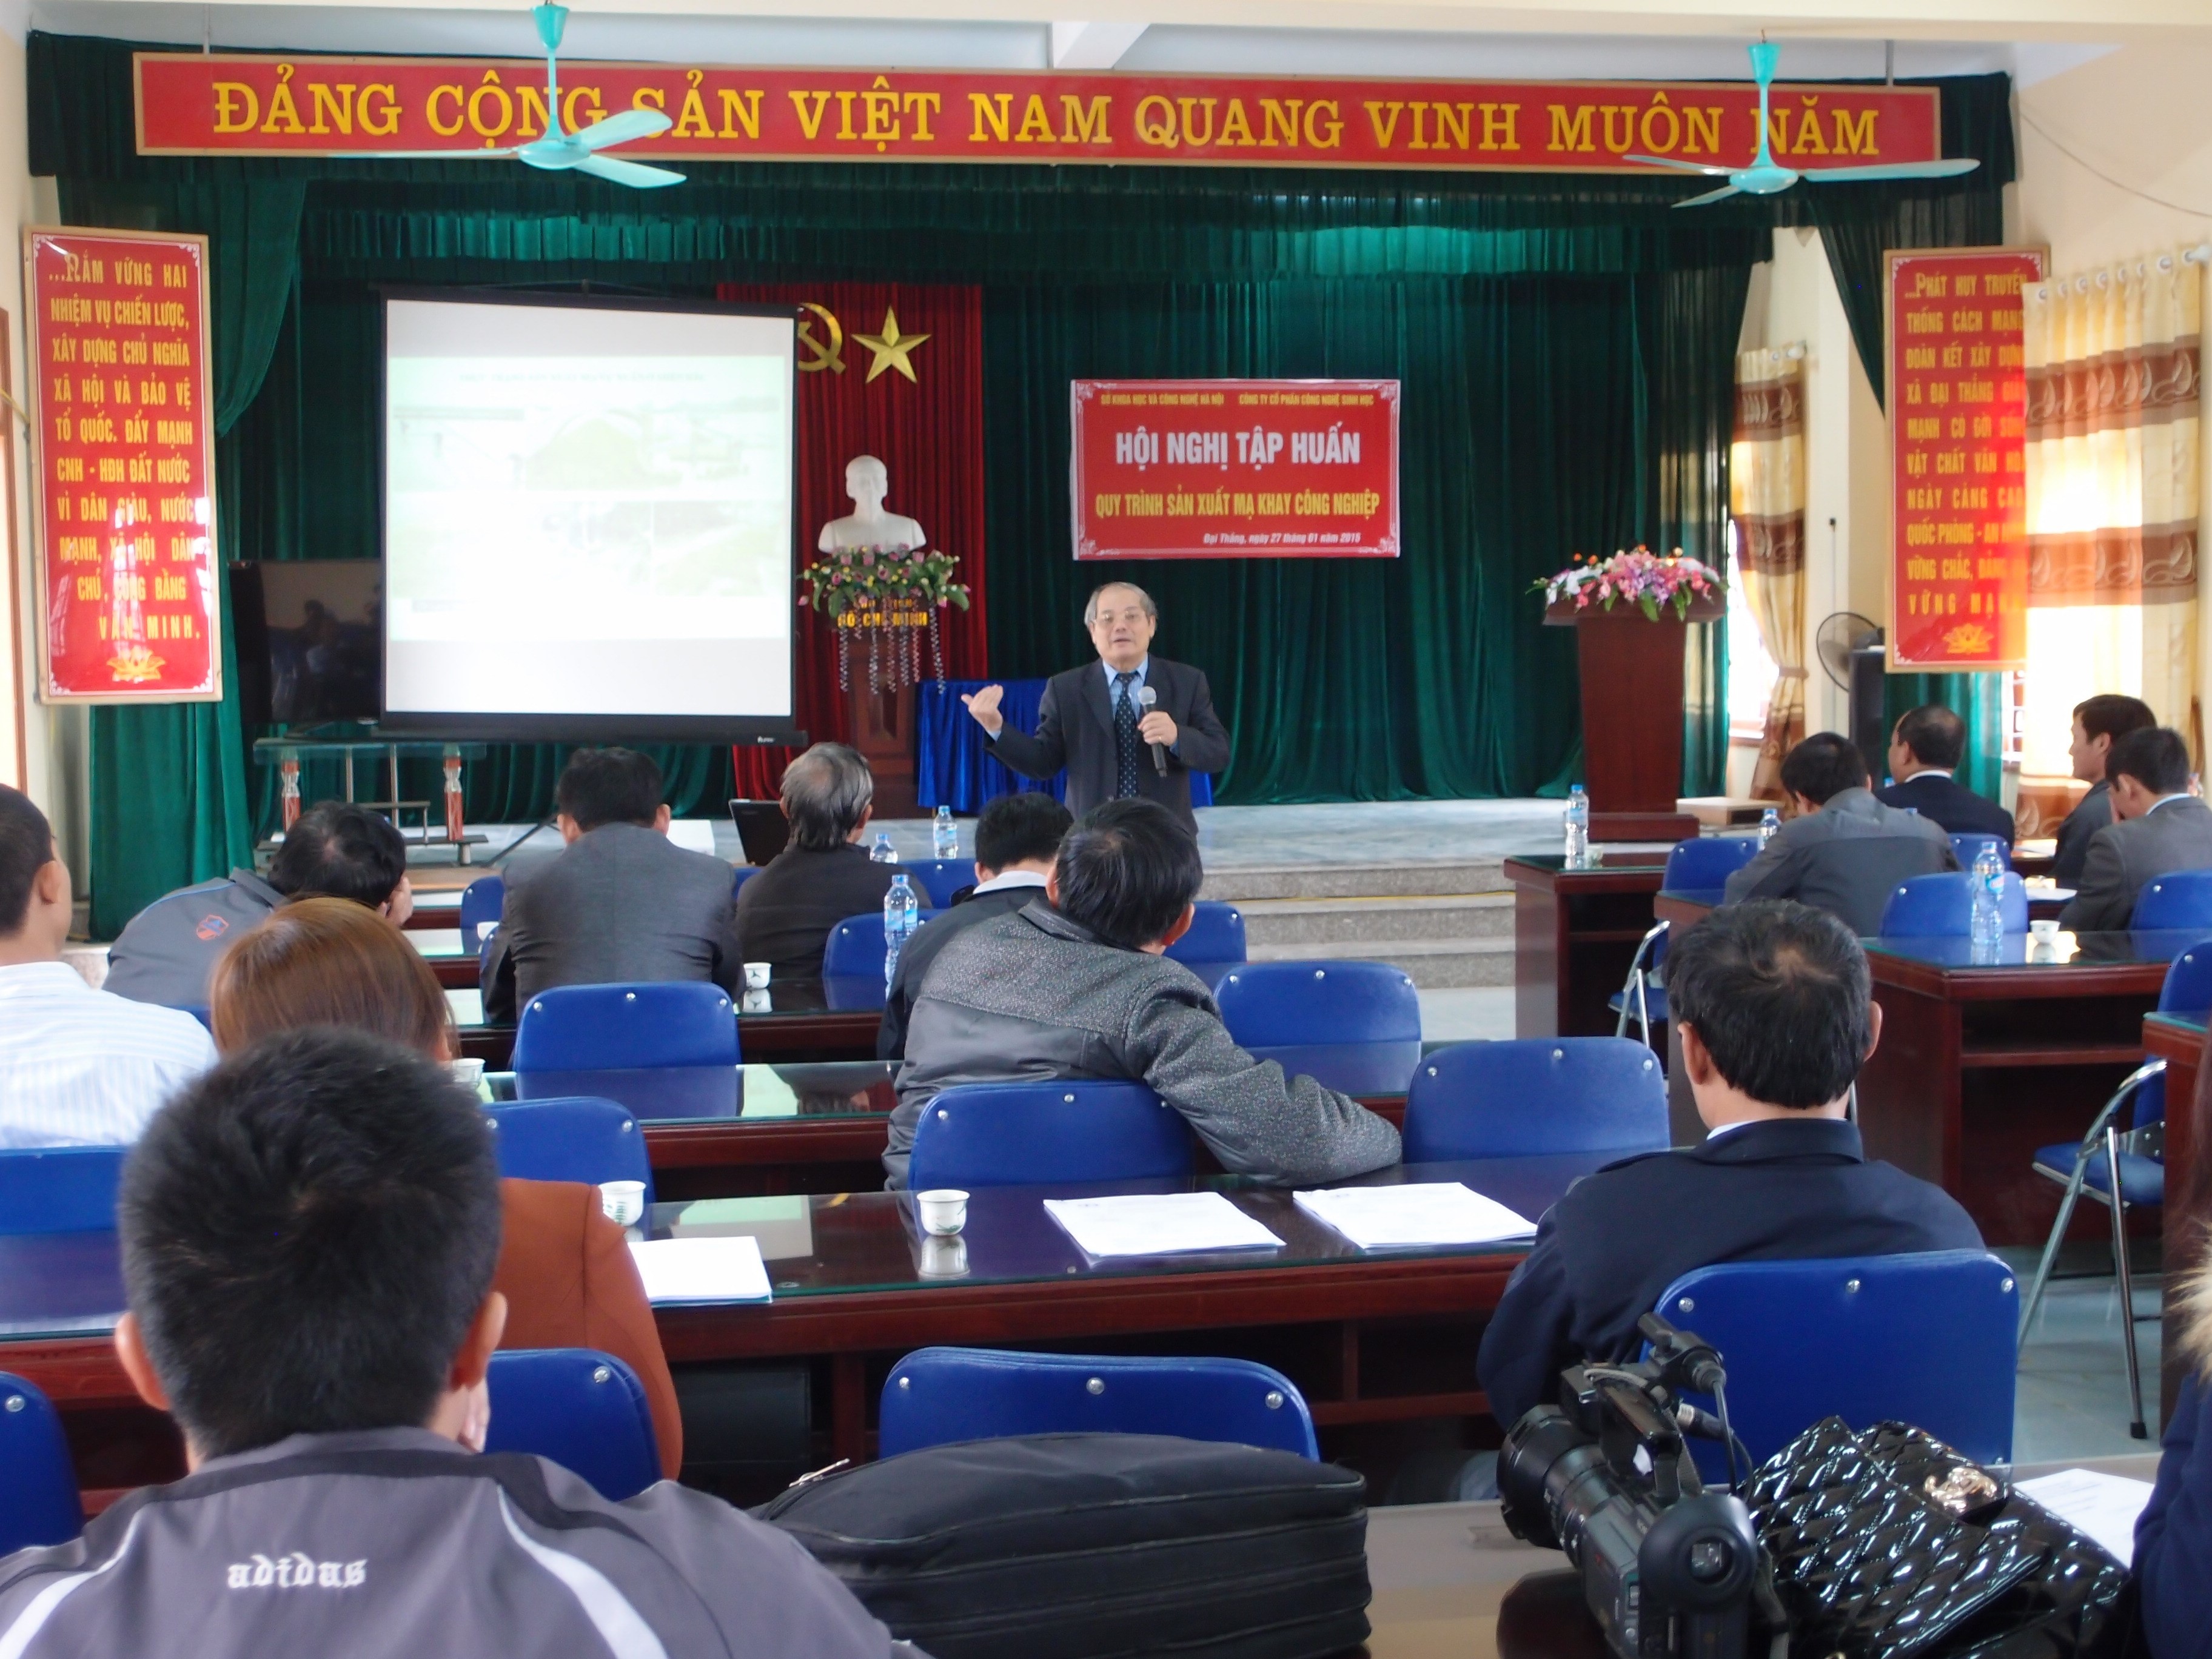 Công ty Cổ phần Công nghệ sinh học tổ chức buổi Hội nghị tập huấn Quy trình sản xuất mạ khay công nghiệp tại Phú Xuyên, Hà Nội